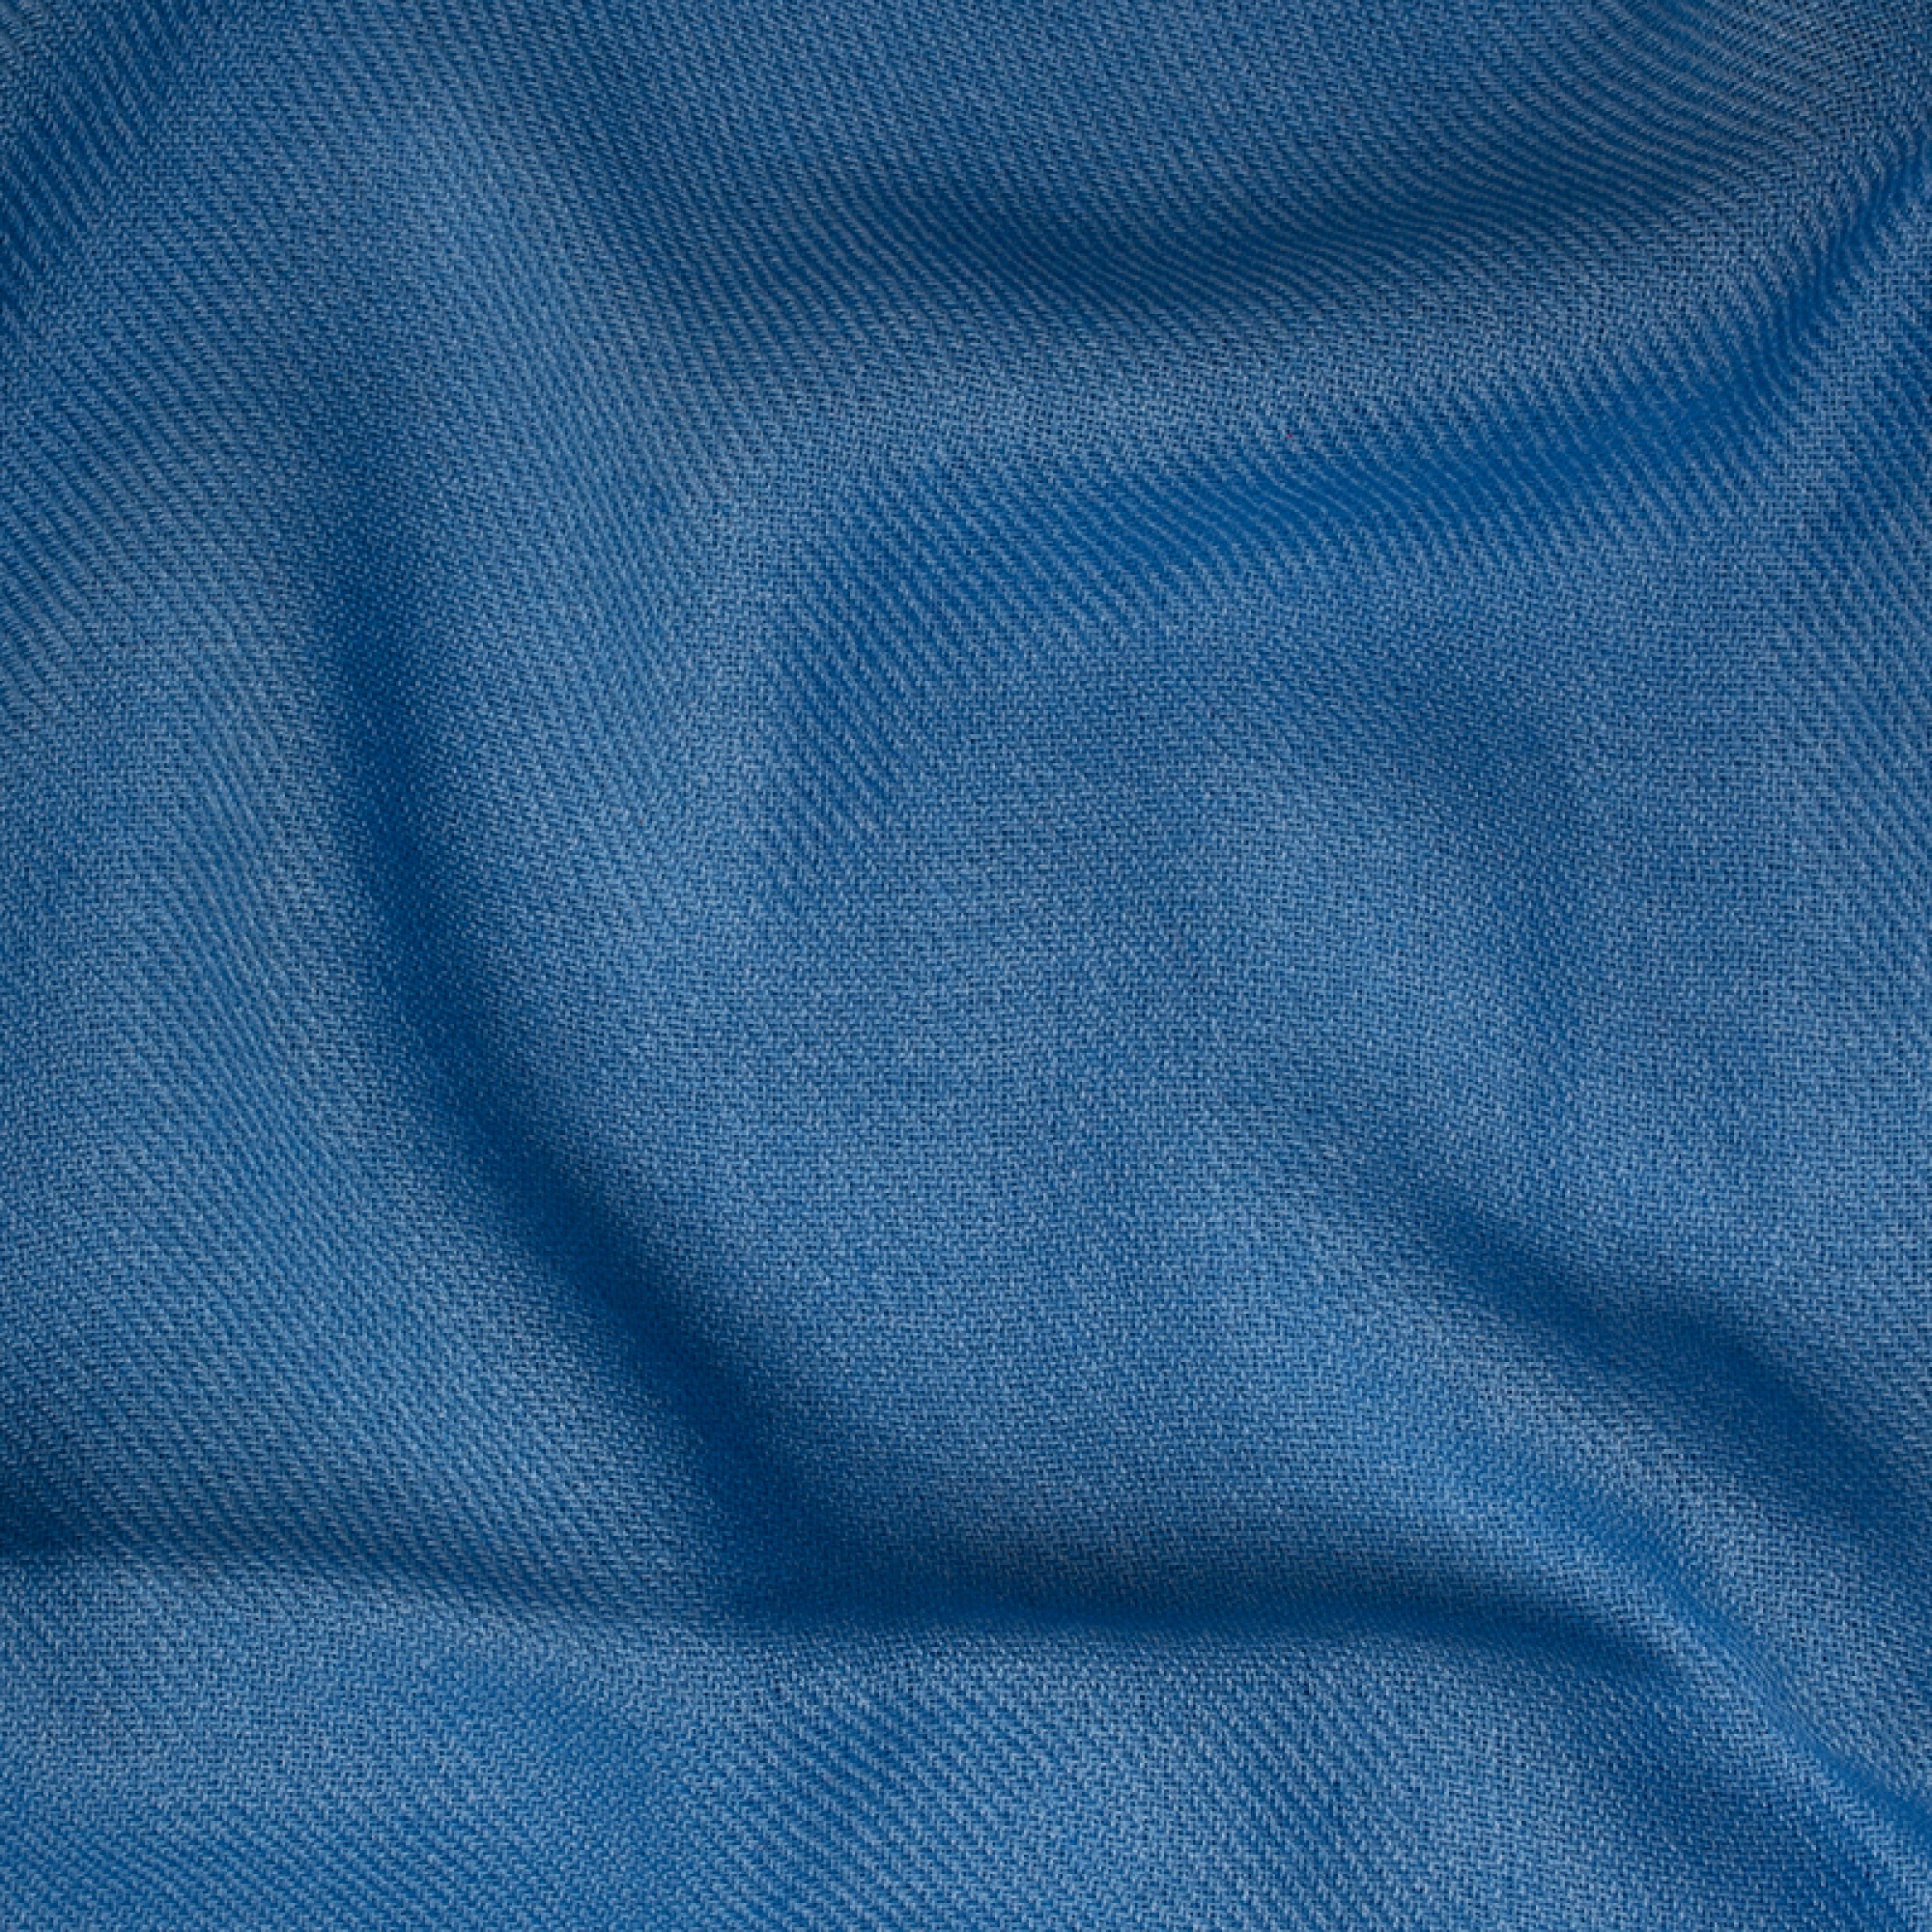 Cashmere accessori toodoo plain xl 240 x 260 azzuro miro 240 x 260 cm